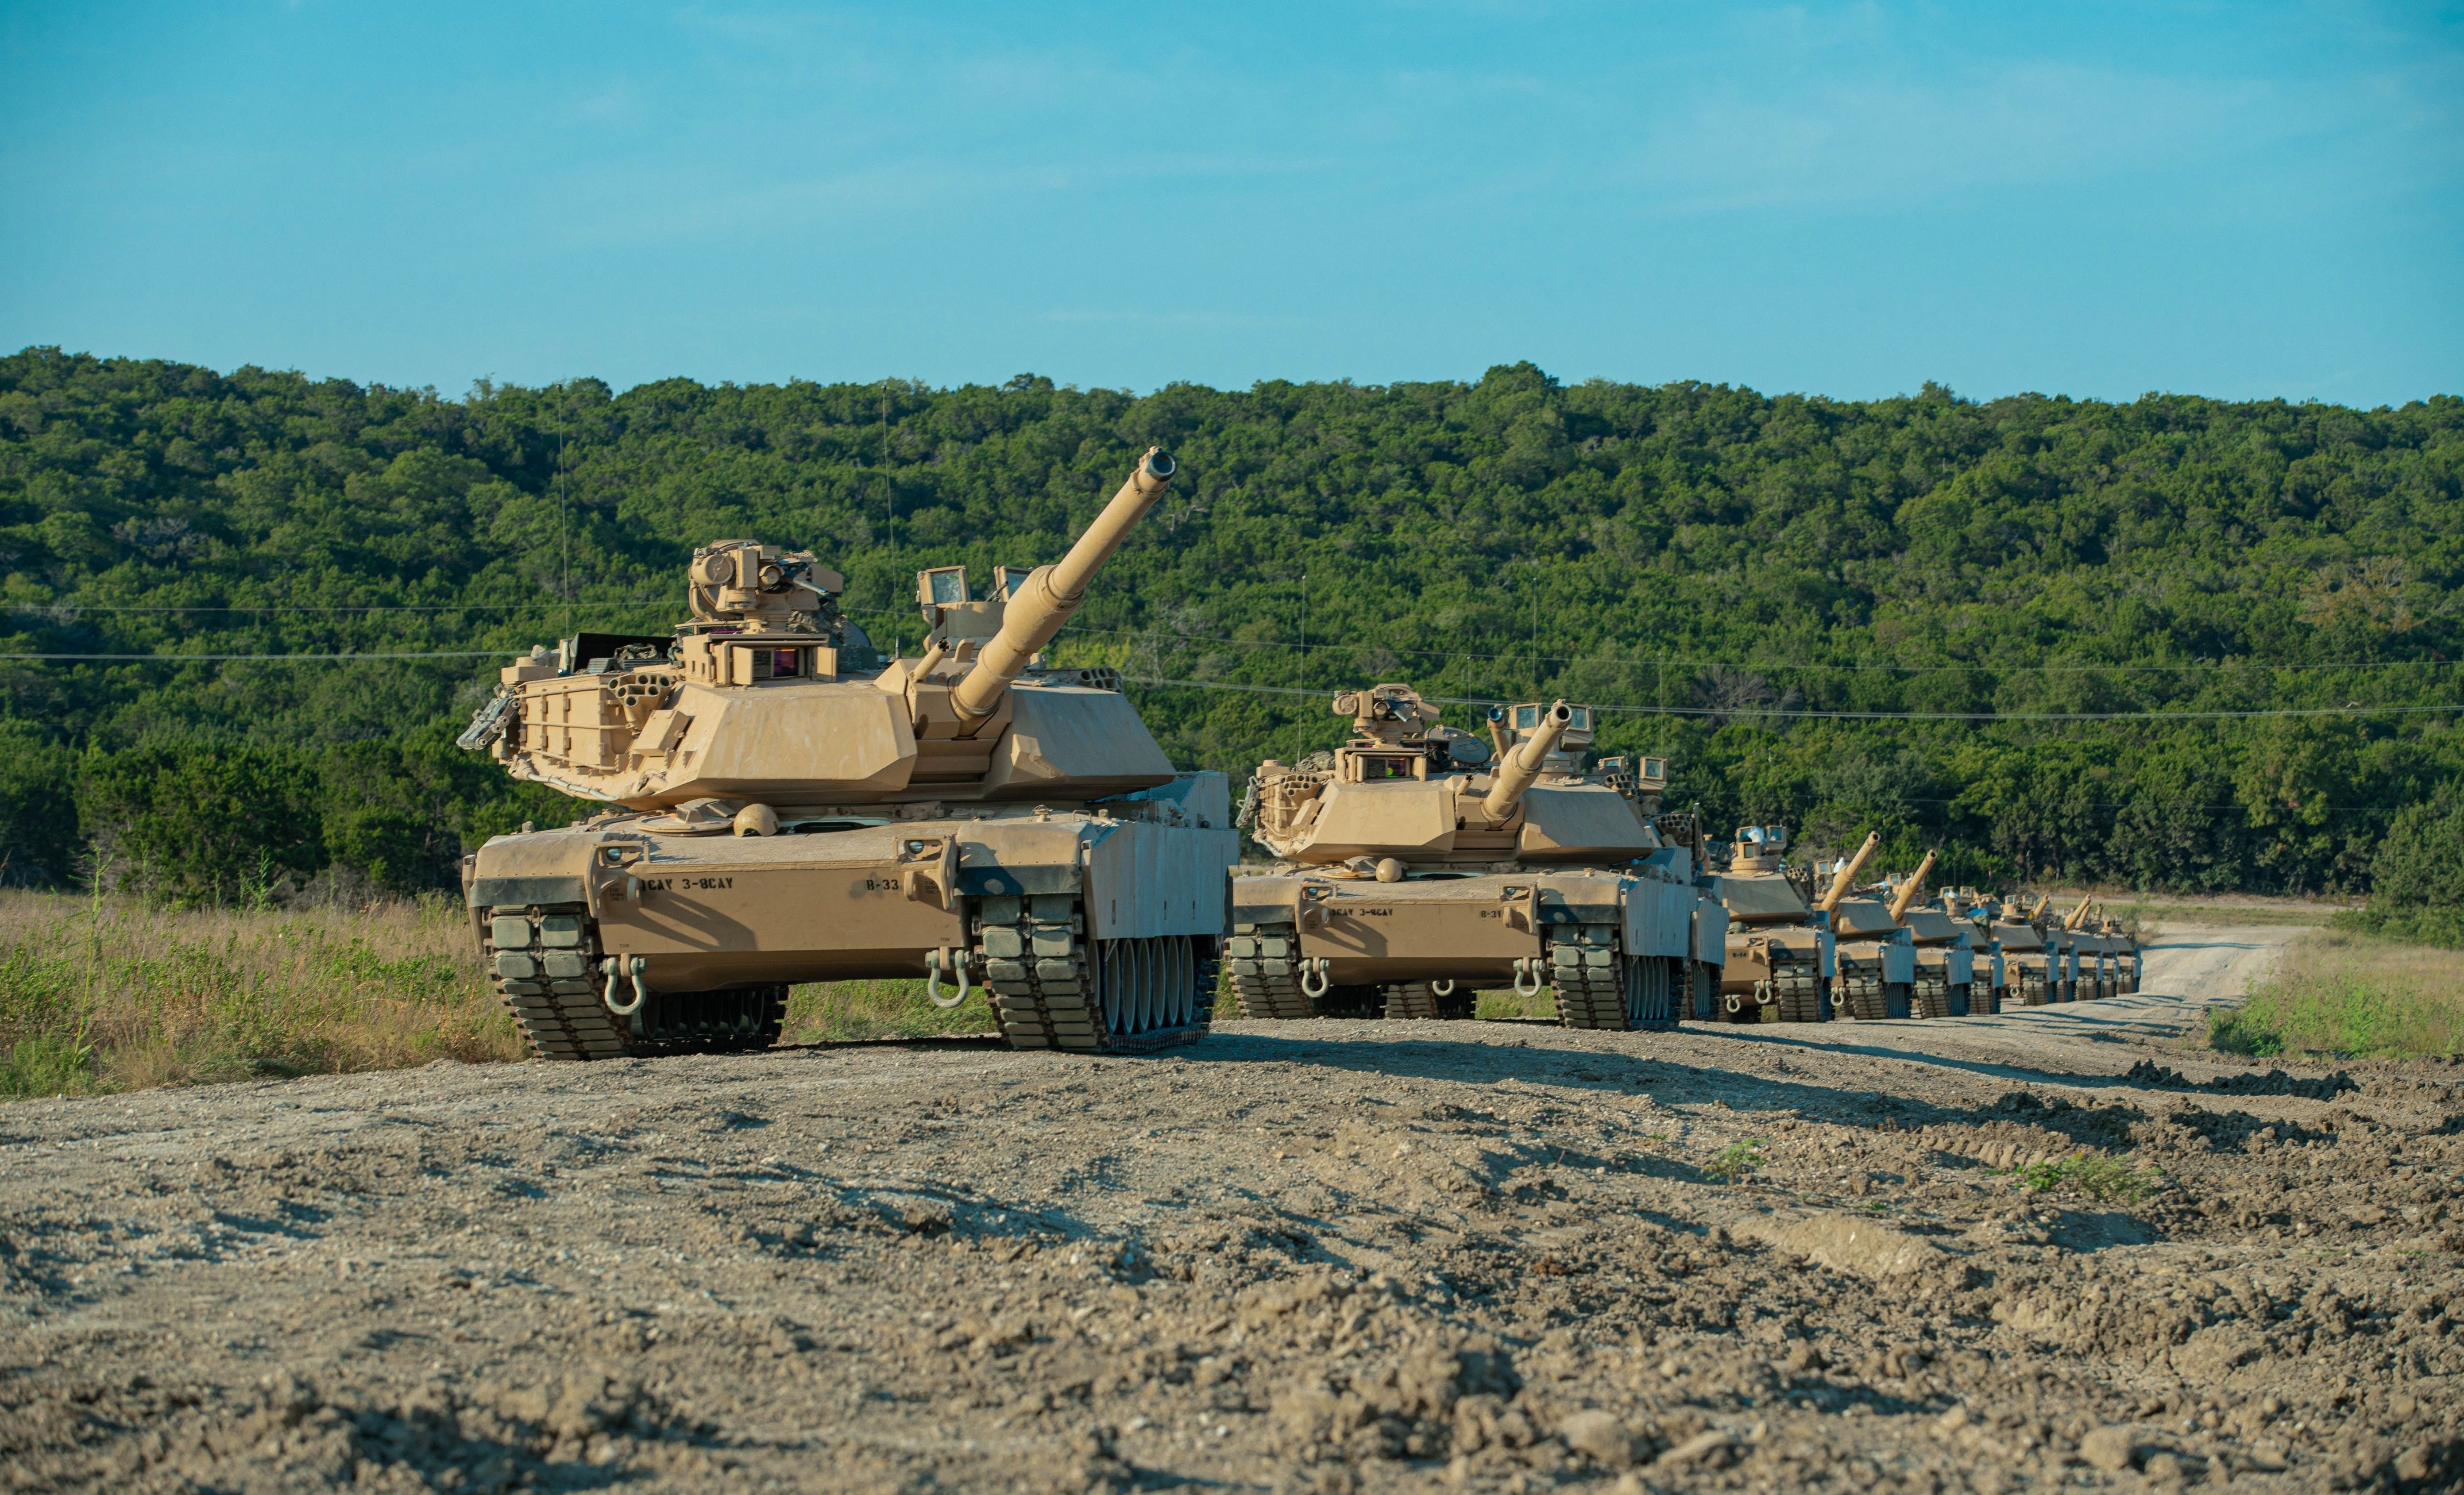 M1A2 Abrams SEPv3 main battle tanks